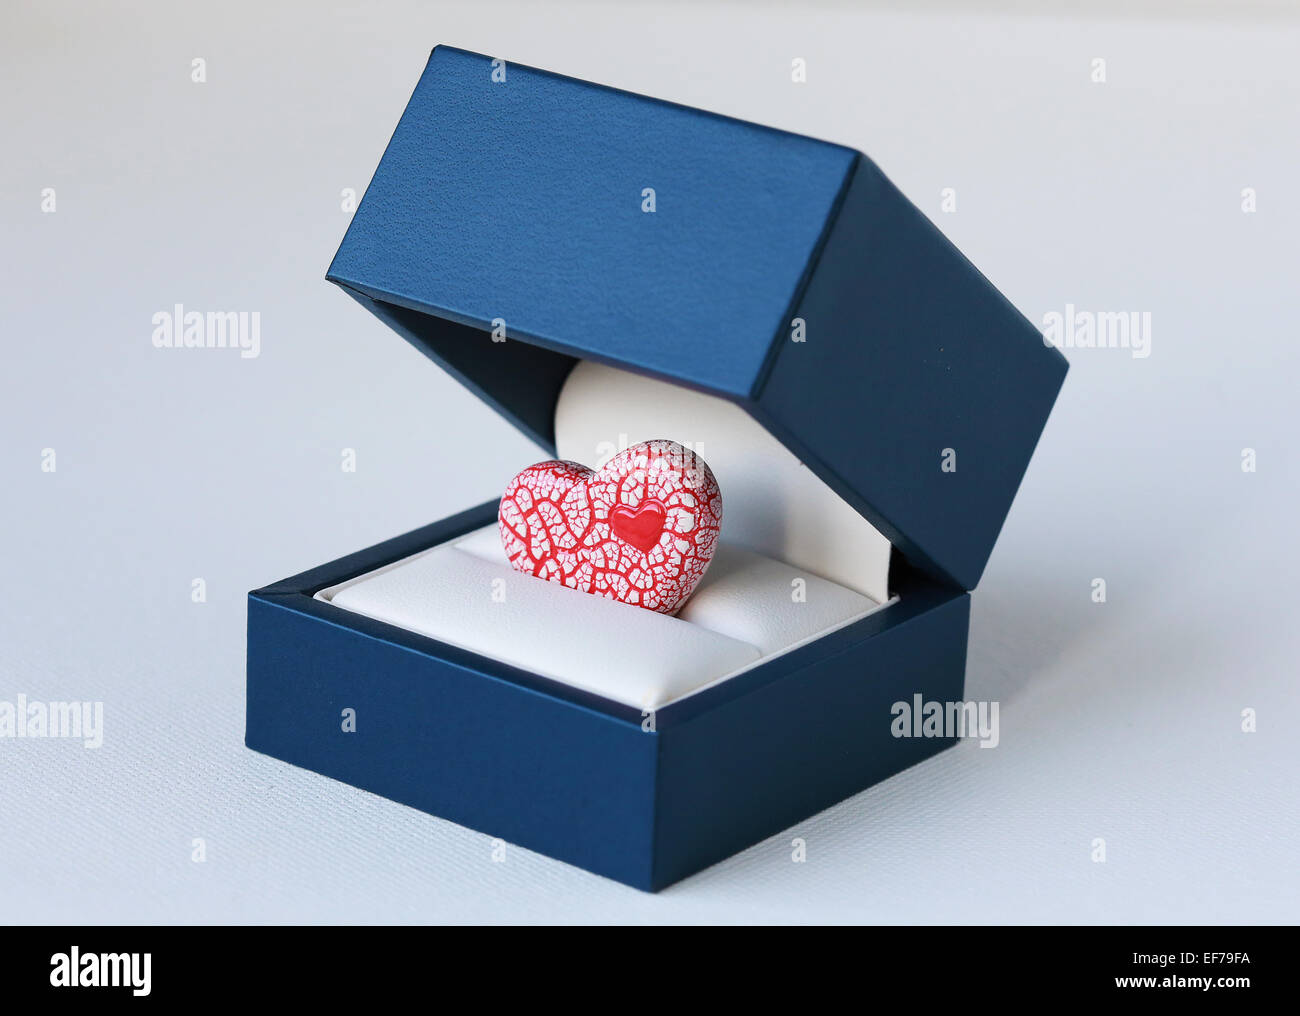 Una imagen de un rojo brillante y blanco corazón de cerámica azul dentro de una caja de joyas, simbolizando una propuesta romántica Foto de stock